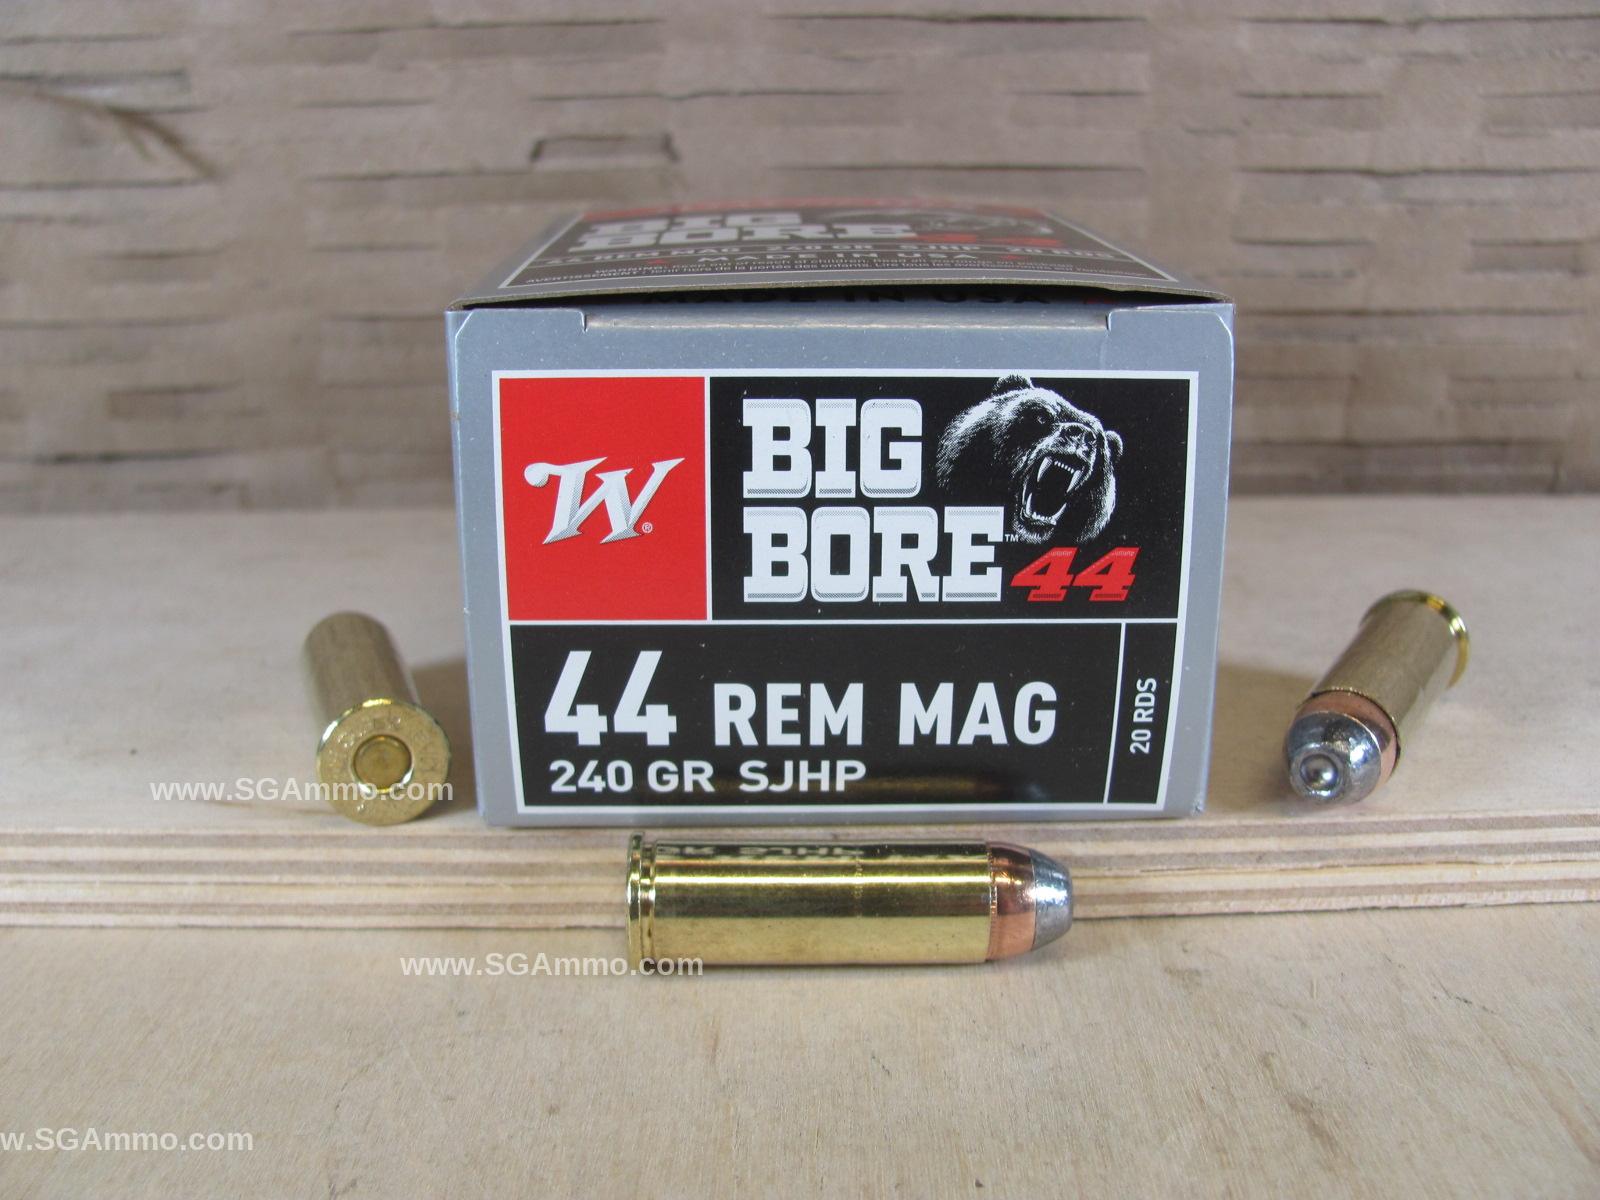 20 Round Box - 44 Remington Magnum 240 Grain SJHP Winchester Big Bore Ammo - X44MBB 